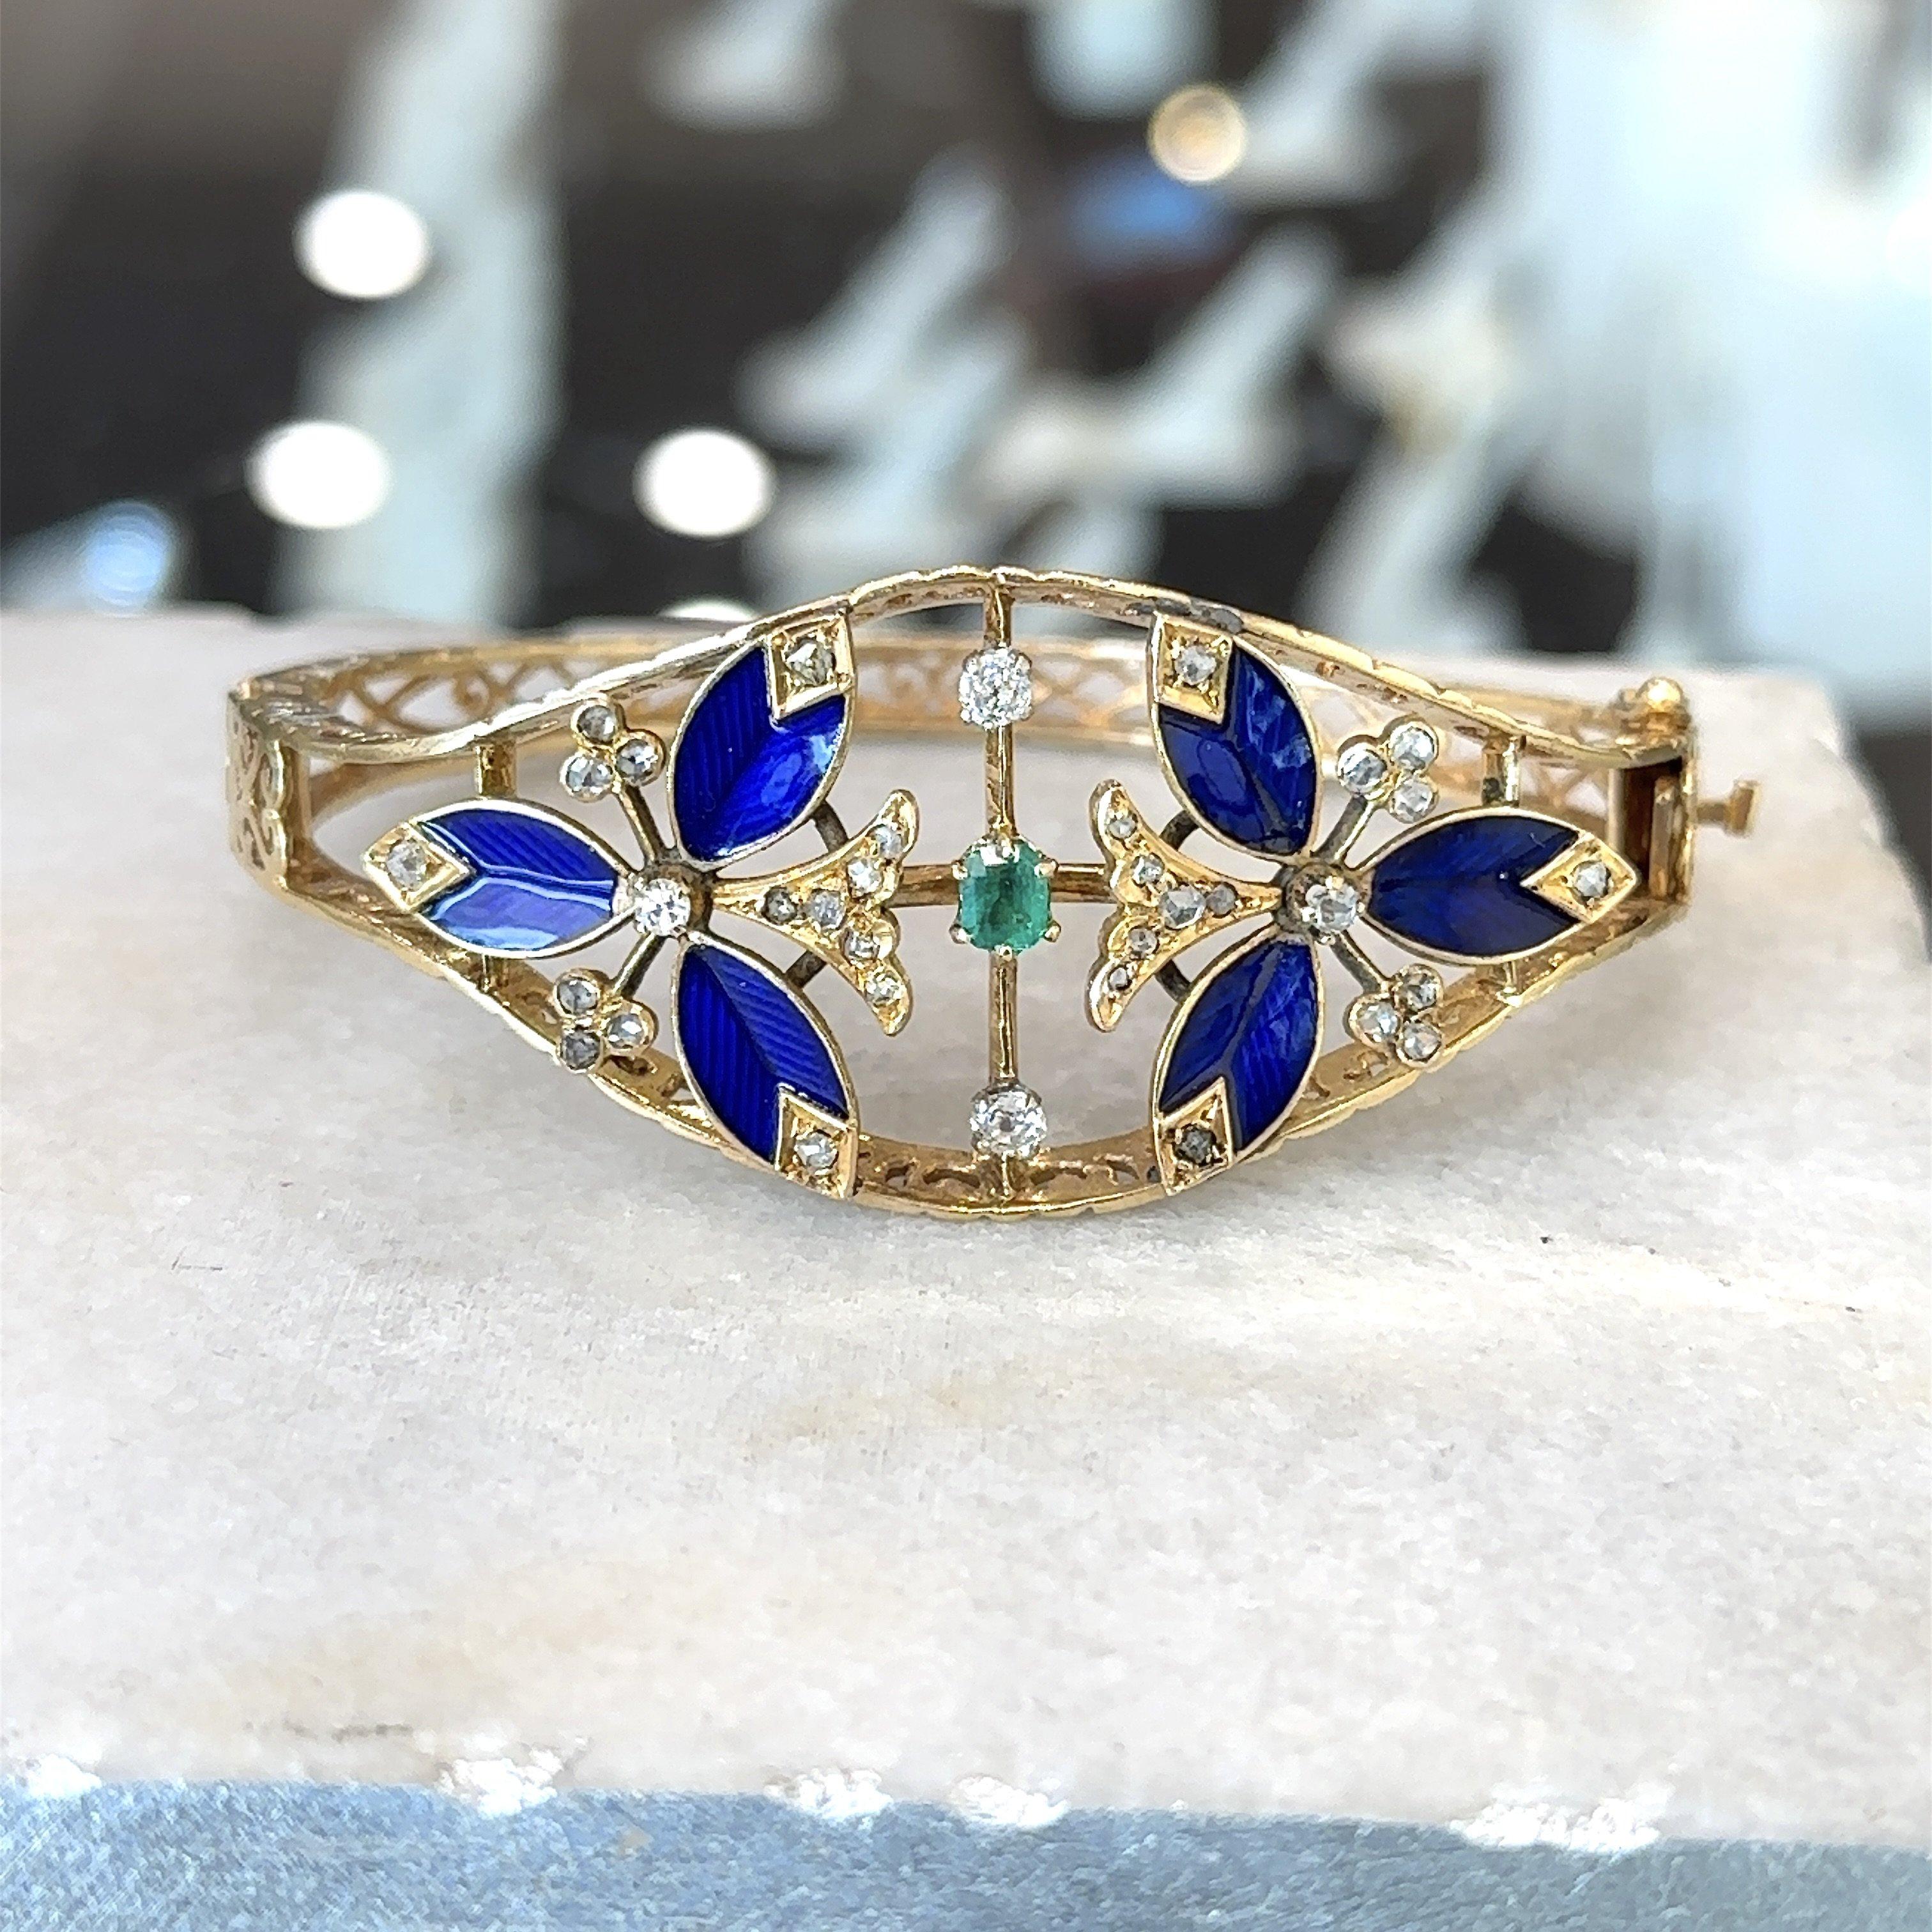 Ce magnifique bracelet à charnière date des années 1950. Elle est fabriquée en or jaune 14KT avec des détails guillochés bleu cobalt et comporte environ 0,70 carats de diamants taille rose et une émeraude ovale de 0,35 carats. Le centre décoratif du